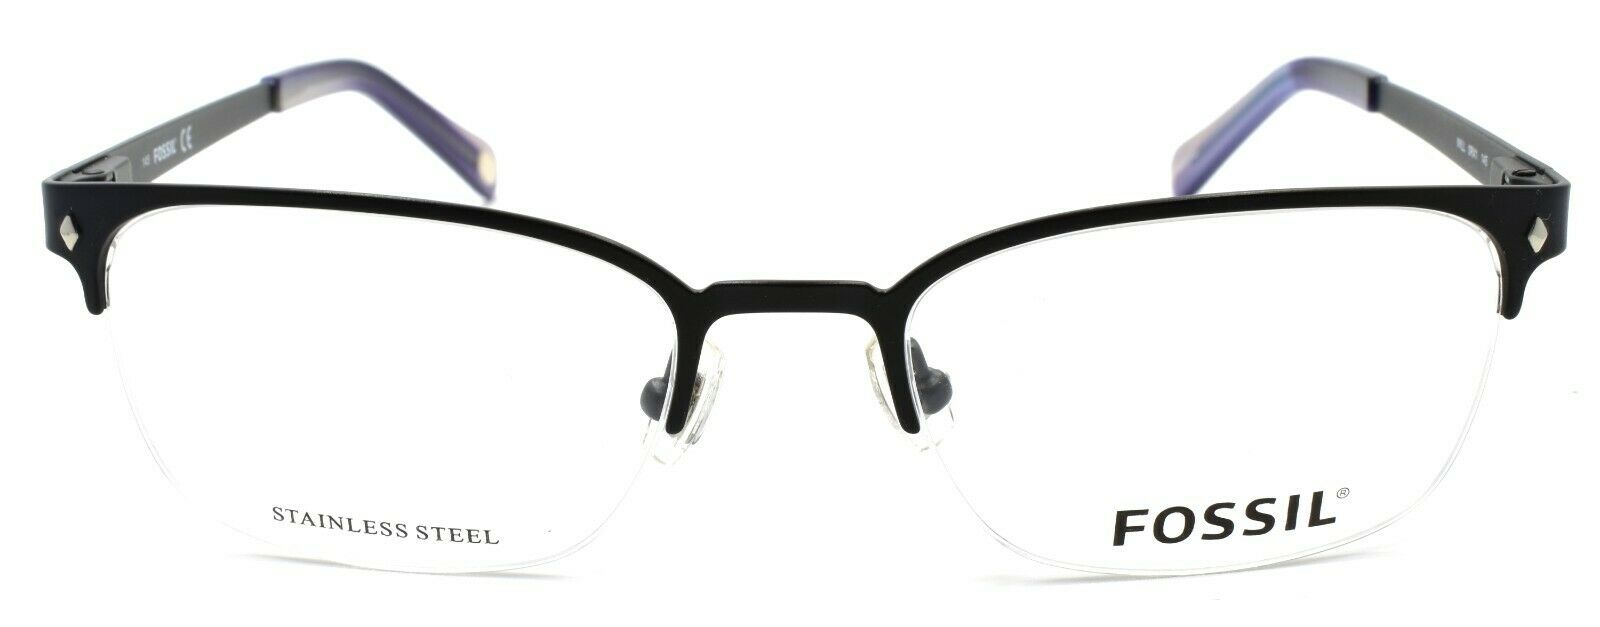 2-Fossil Will 0RX1 Men's Eyeglasses Frames Half-rim 52-19-145 Matte Black-716737556764-IKSpecs